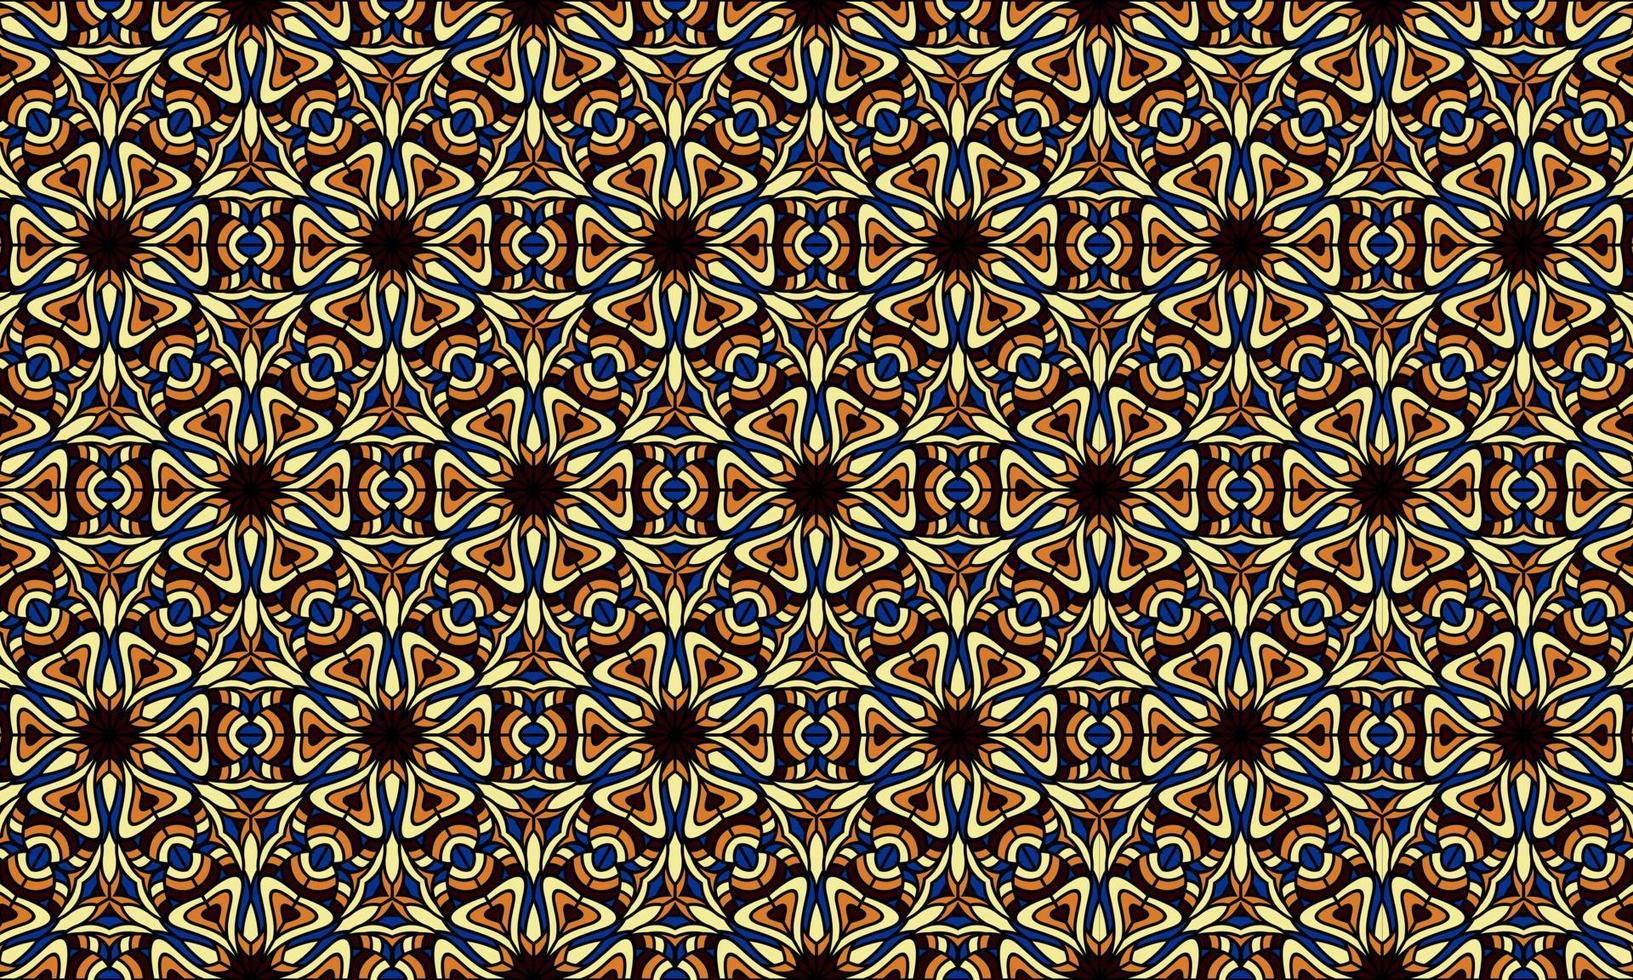 eleganter moderner Batik ethnischer Musterhintergrund vektor